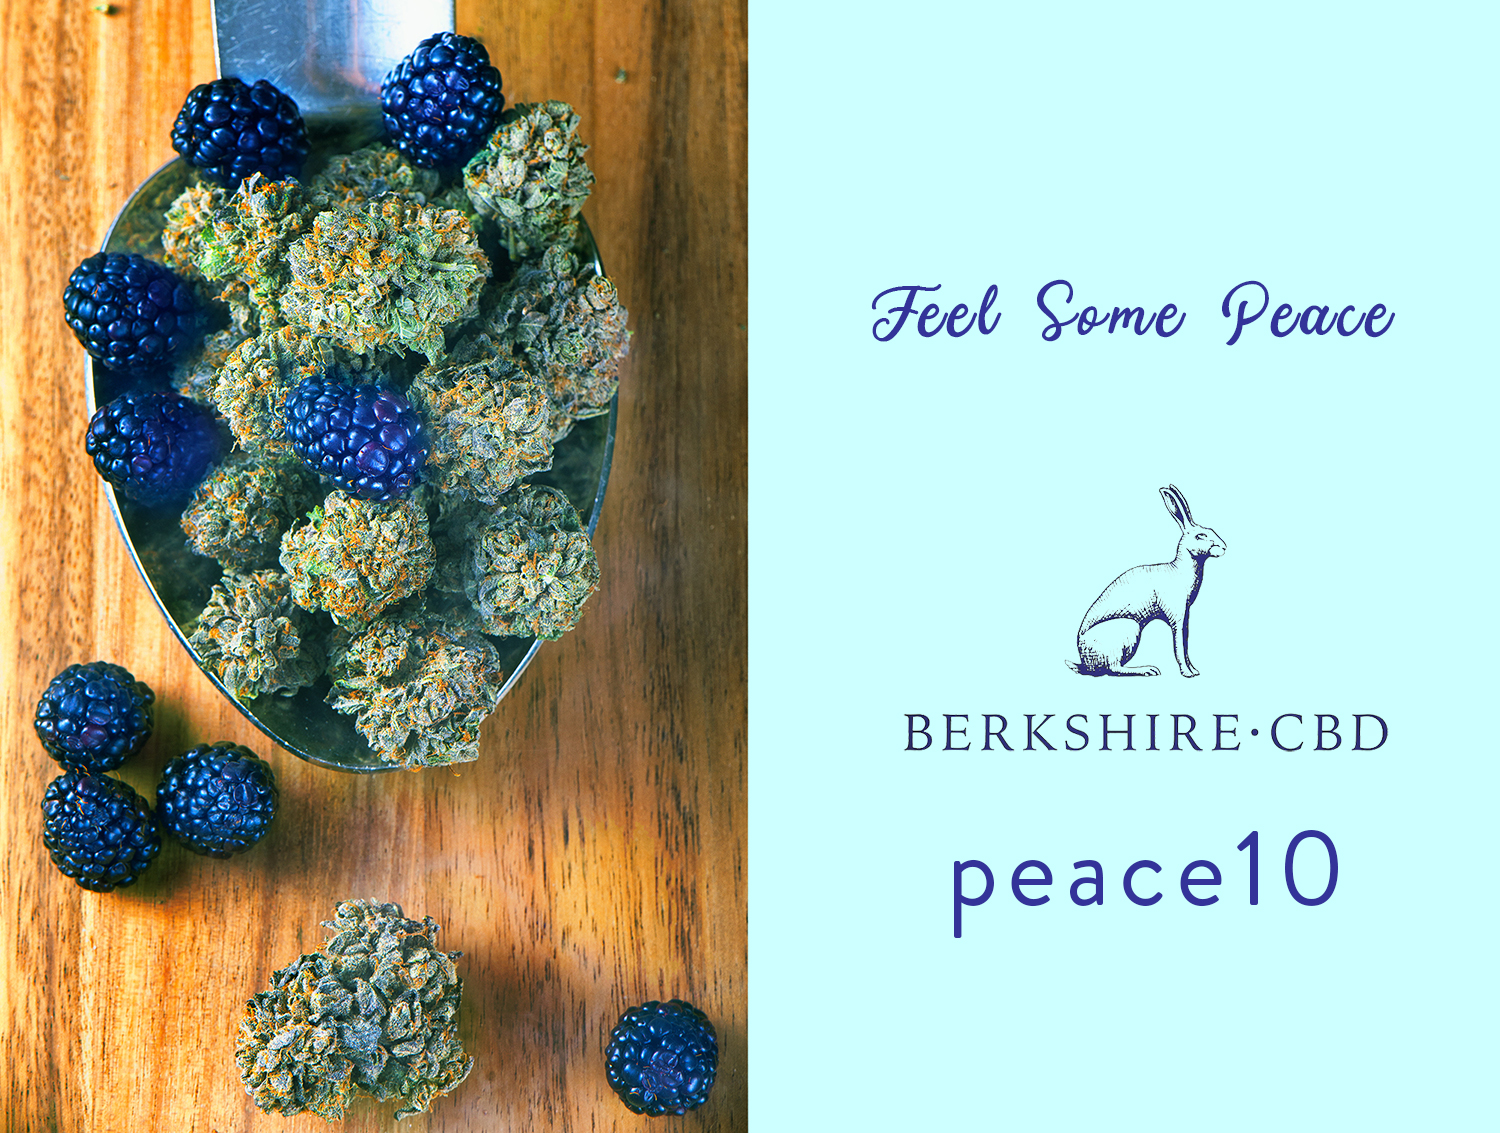 Berkshire CBD Peace